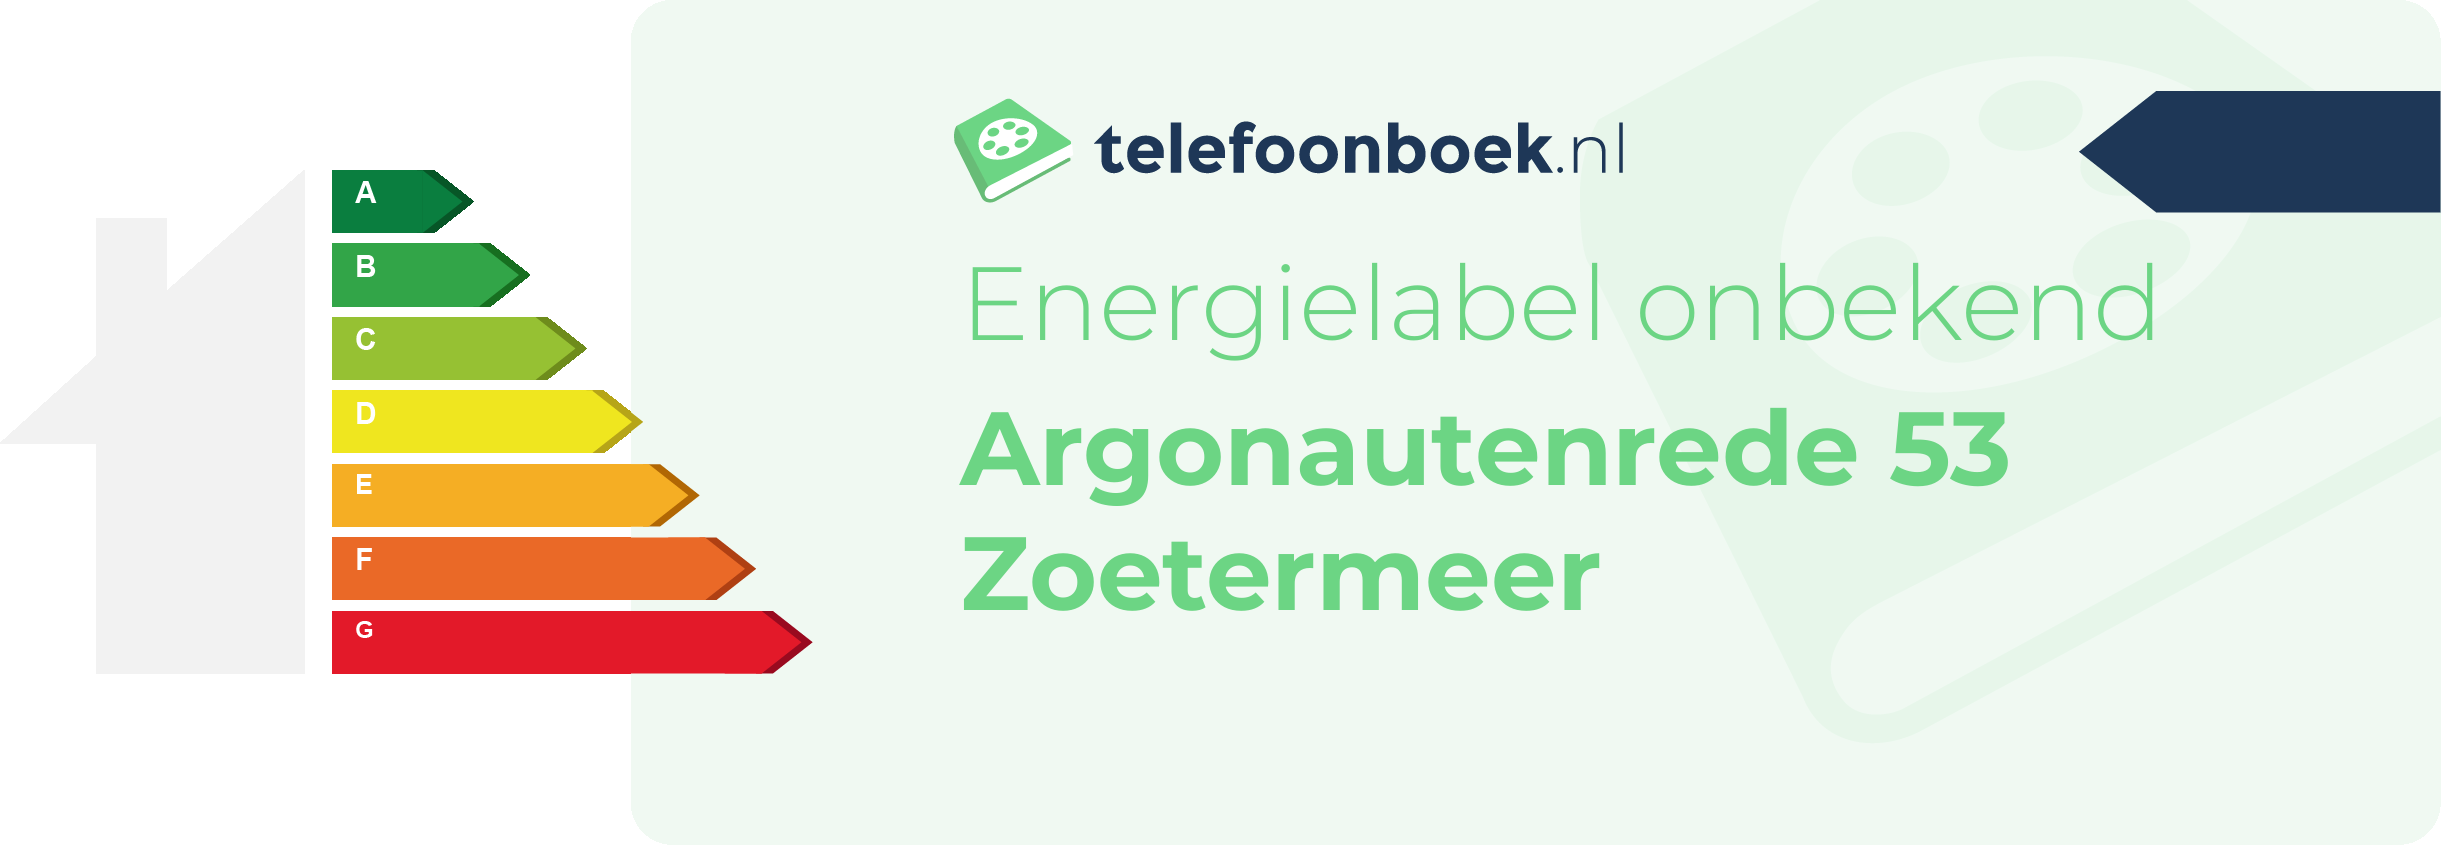 Energielabel Argonautenrede 53 Zoetermeer